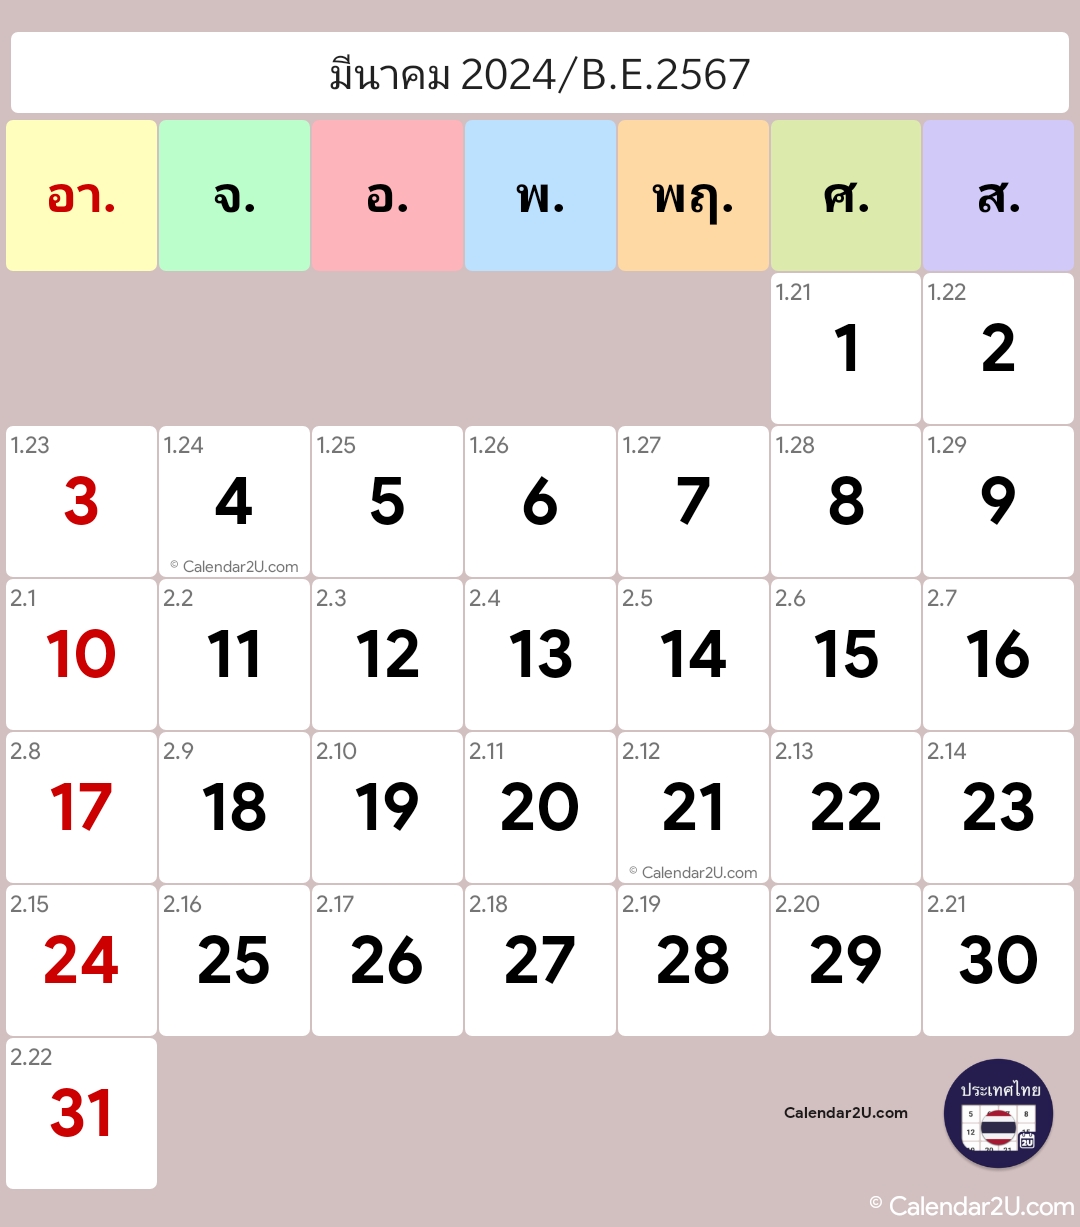 ประเทศไทย (Thailand) Calendar